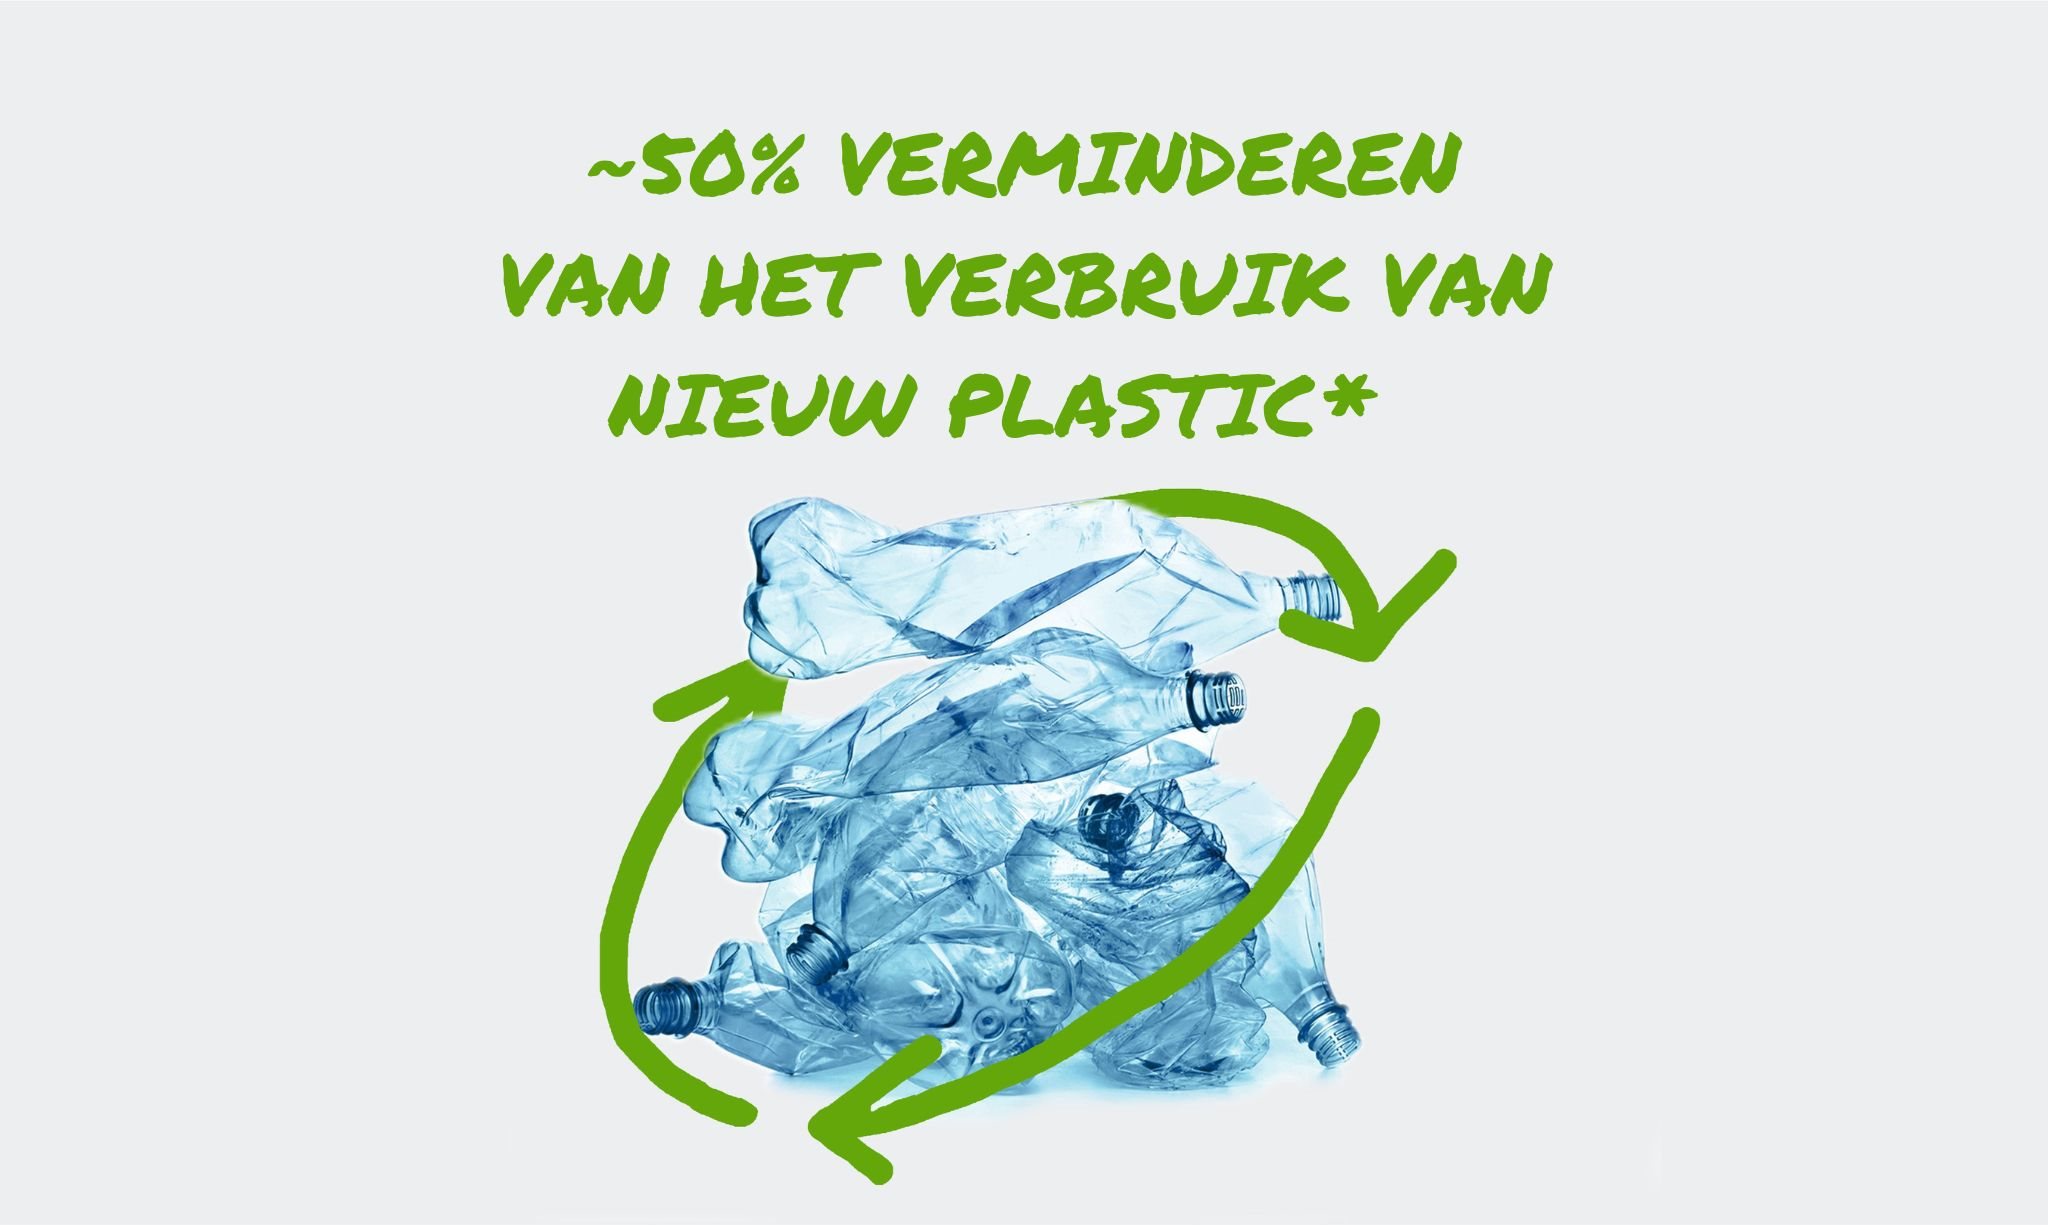 Een stapel afgedankte plastic flessen omringd door een gestileerd recyclingsymbool